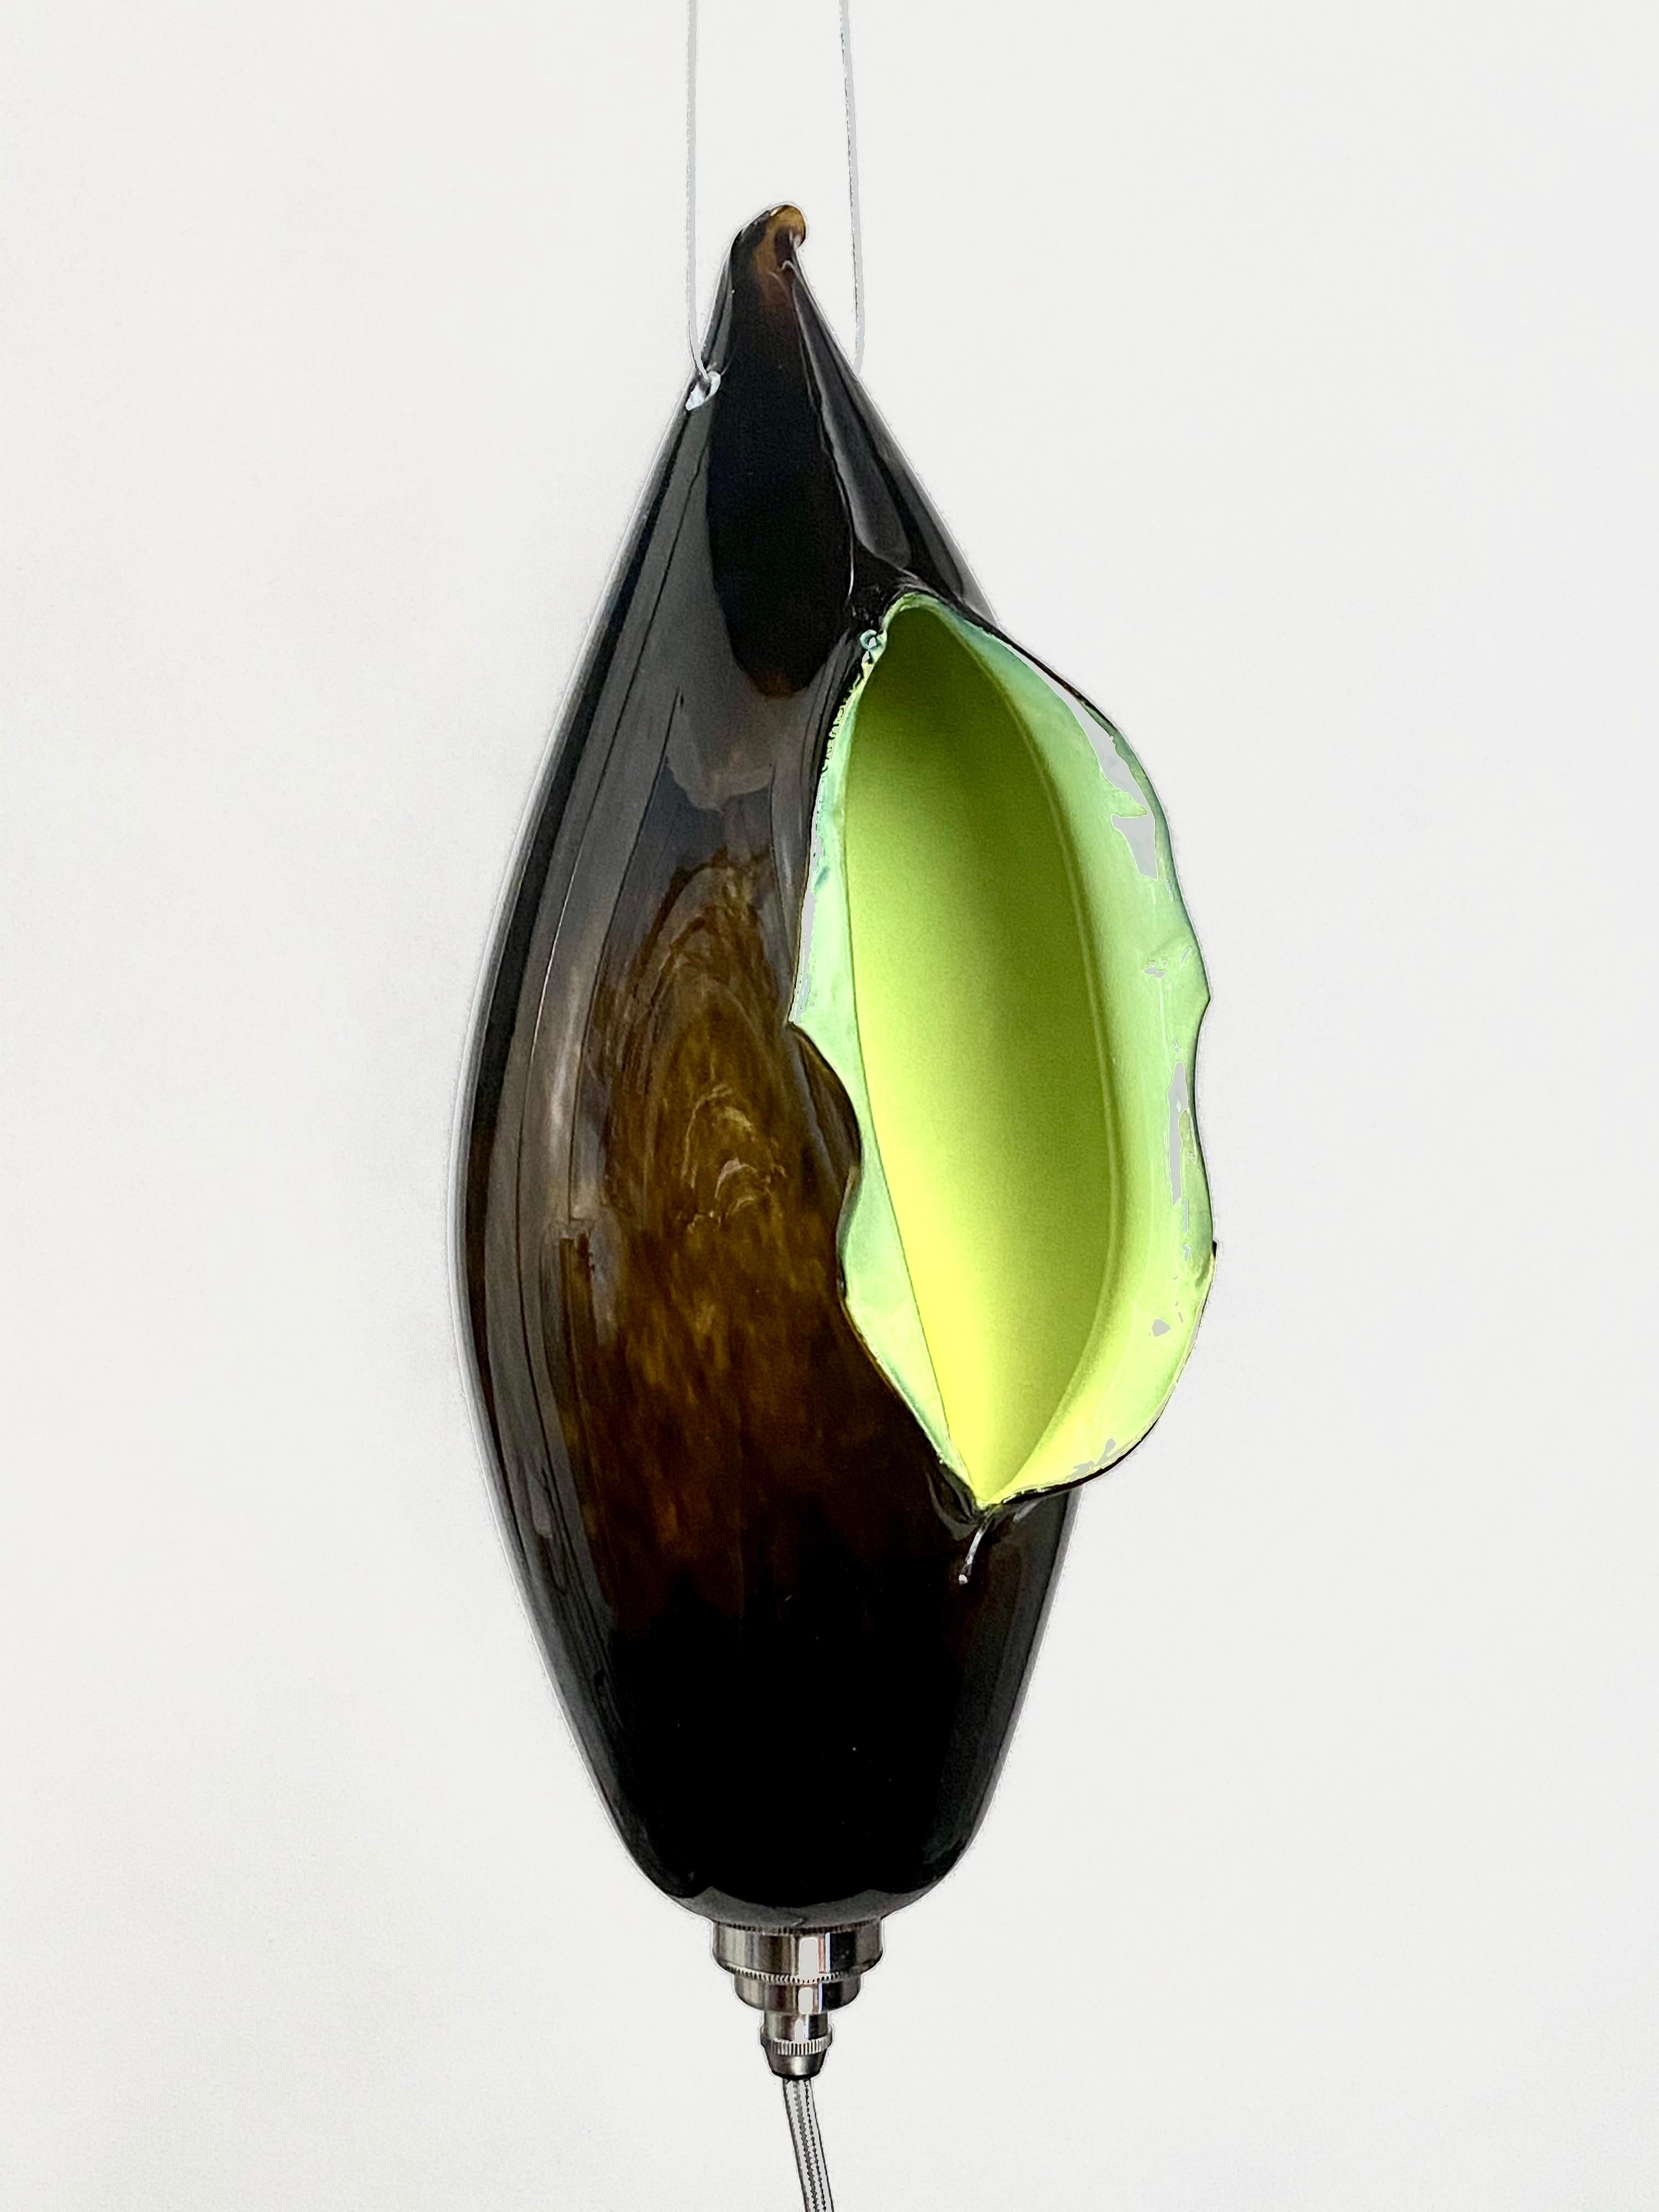 Il s'agit d'une nouvelle œuvre de Mattia Biagi dans un verre.
Cette lampe sculpturale peut être utilisée comme lampe de table ou suspendue.
le fil métallique de 16 pieds recouvert de tissu robuste de couleur nickel permet de multiples possibilités